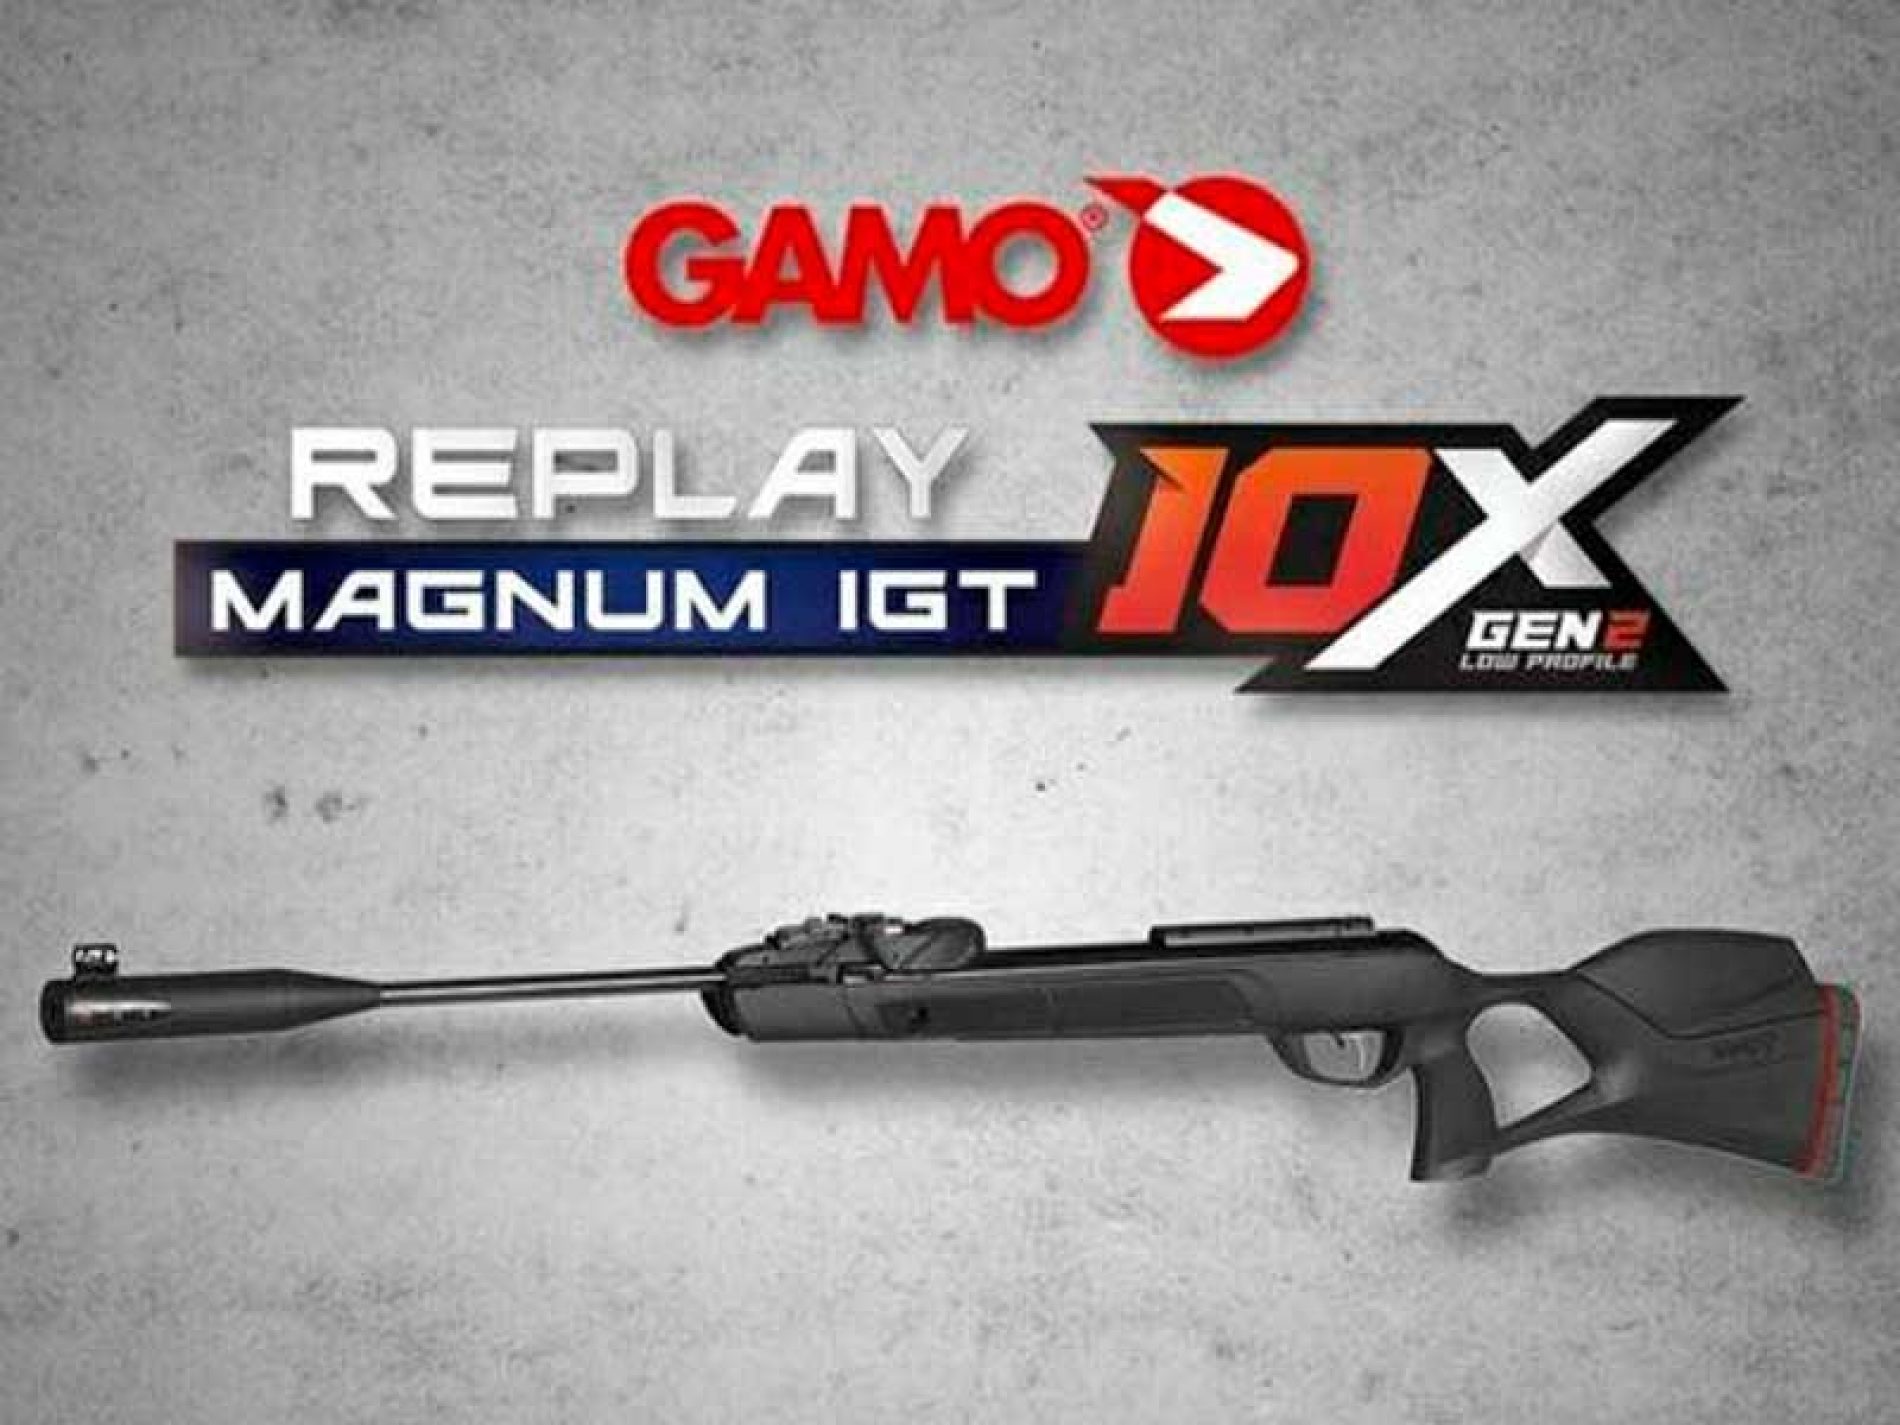 Potencia, ligereza y rapidez en la carabina Gamo Replay Magnum IGT 10X